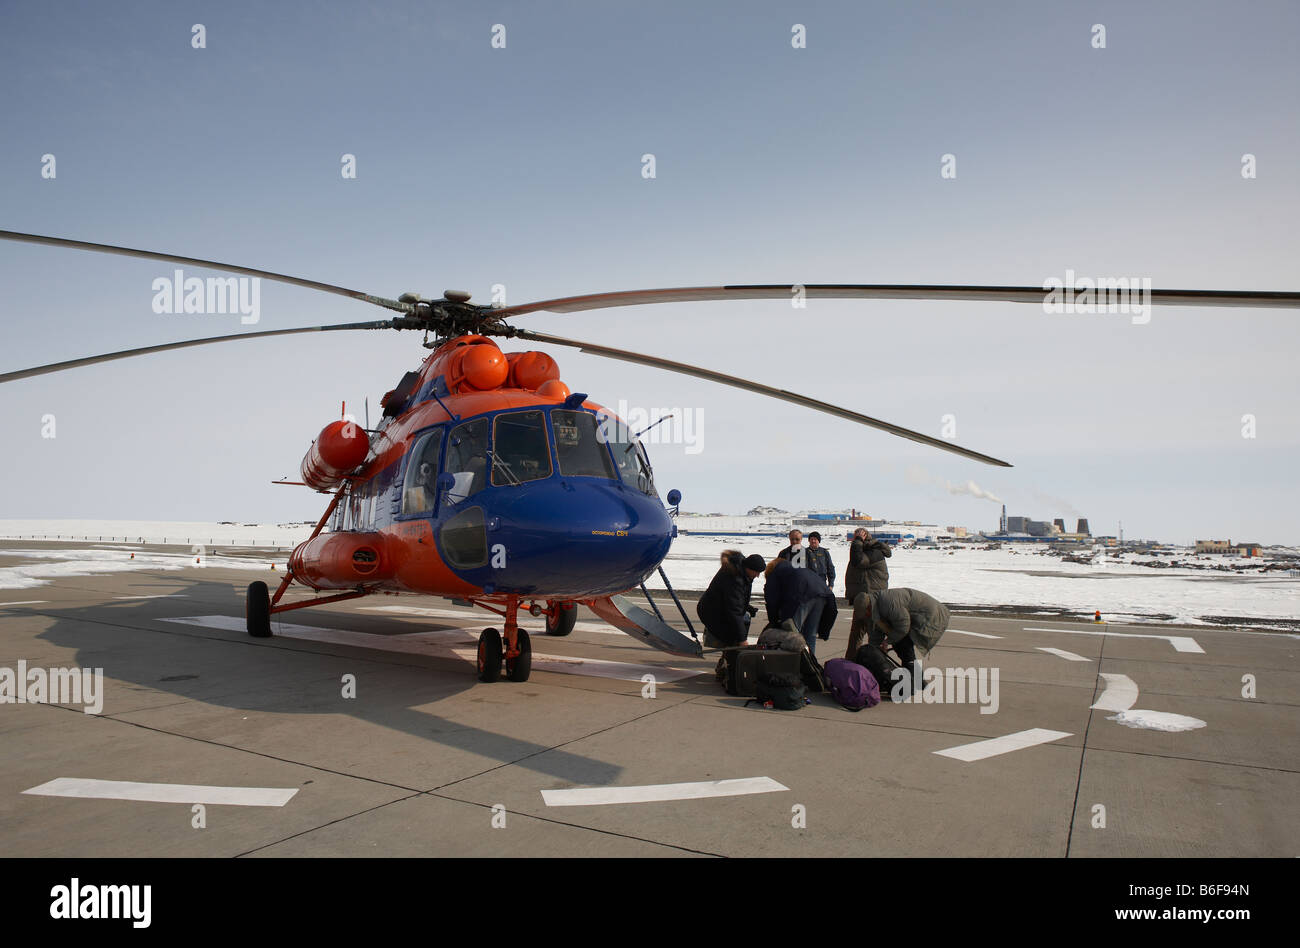 Journaliste avec hélicoptère MI-8, Sibérie Russie Anadyr Banque D'Images